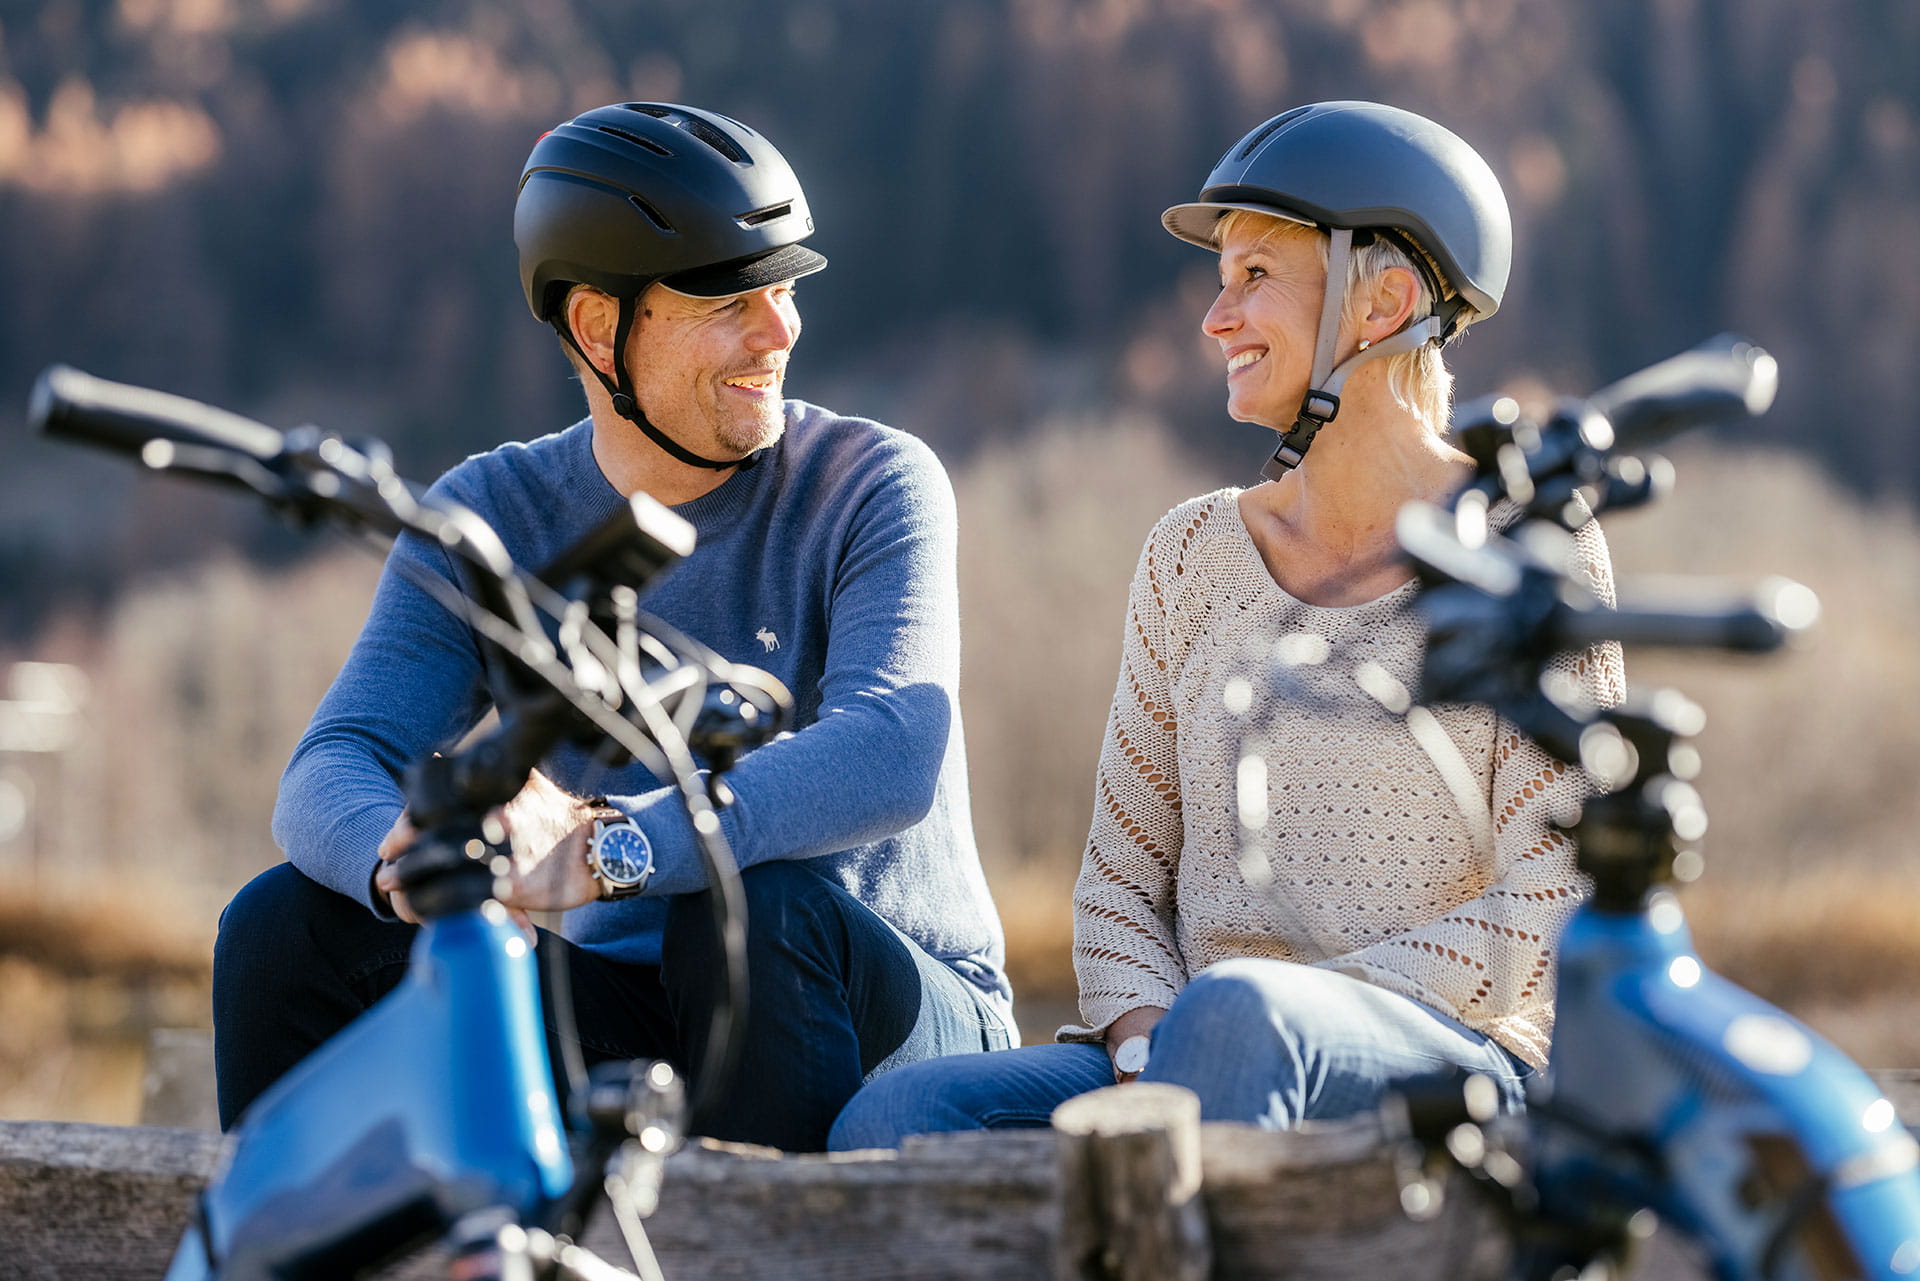 EIn Paar geniesst die abenteuerliche FLYER E Bikes Tour in Obergoms.